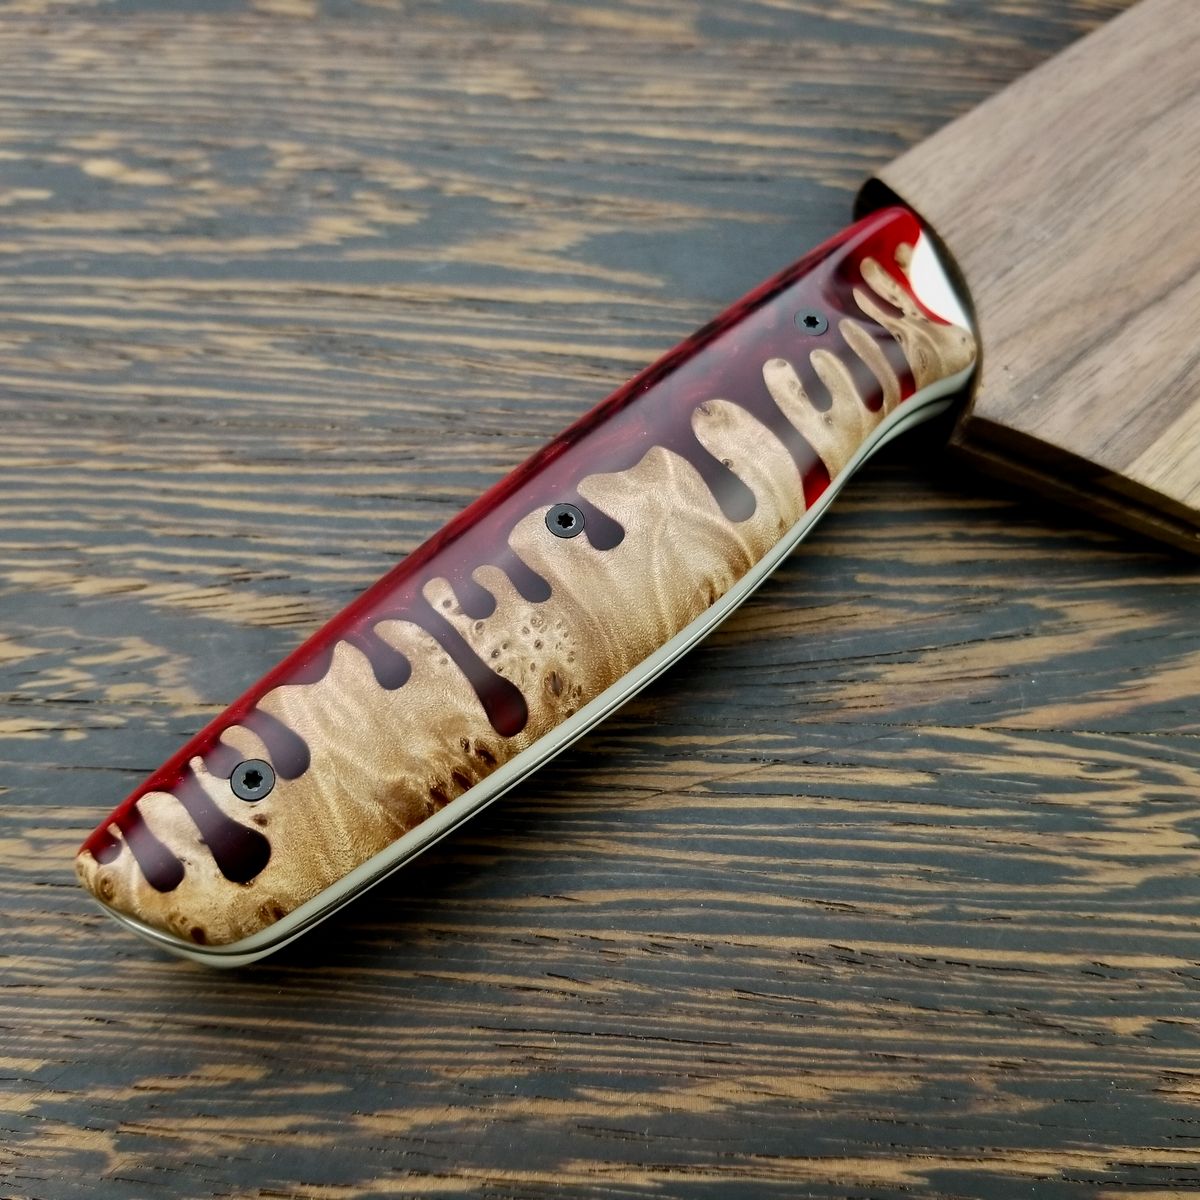 Bone Saw - Gyuto K-tip 10in Chef&#39;s Knife - Herringbone Damascus - Blood Drip Handles